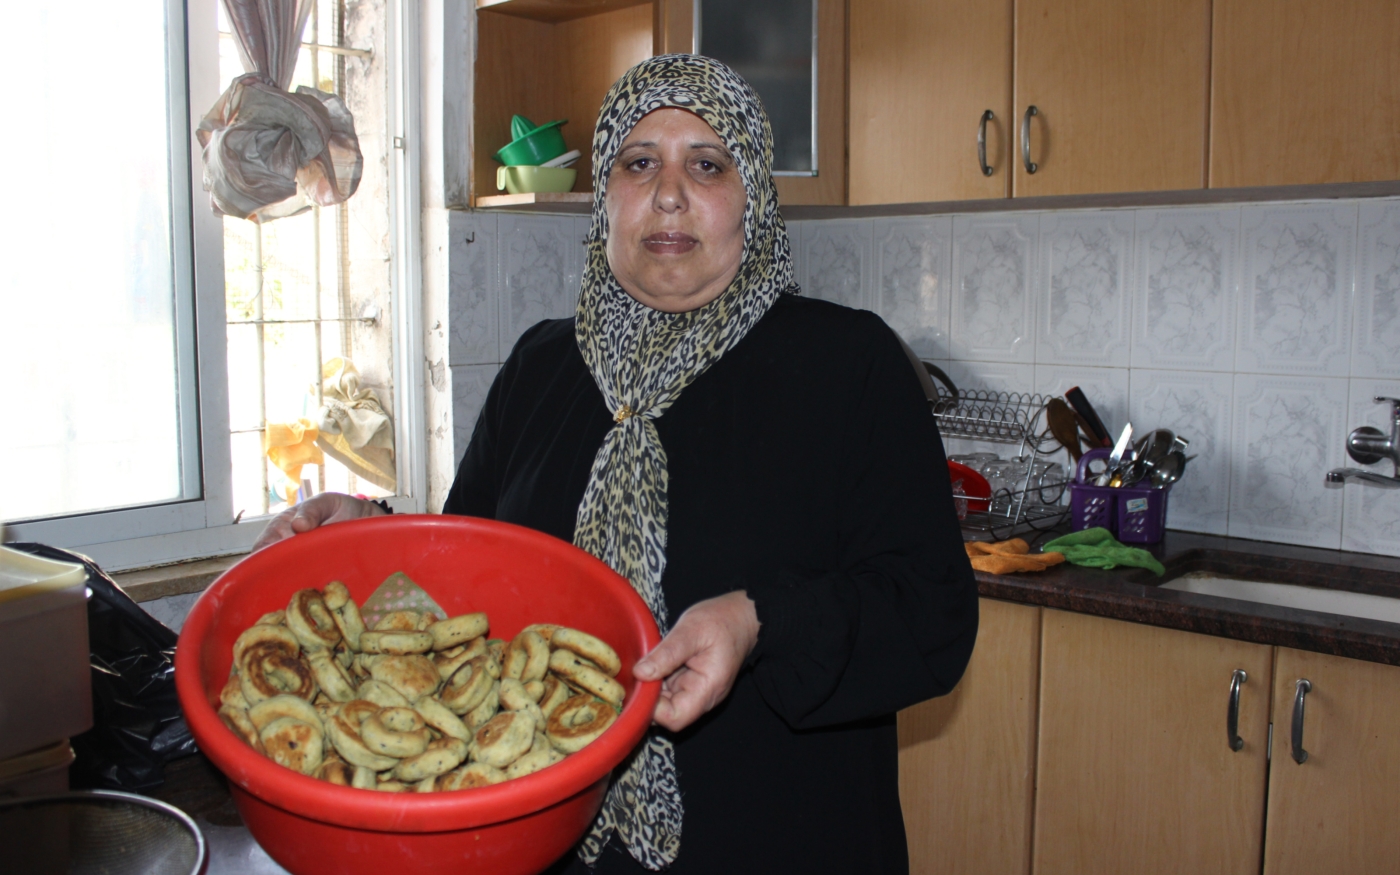 Nuha Attieh présente les biscuits qu’elle a préparés pour les activistes (MEE/Aseel al-Jundi)